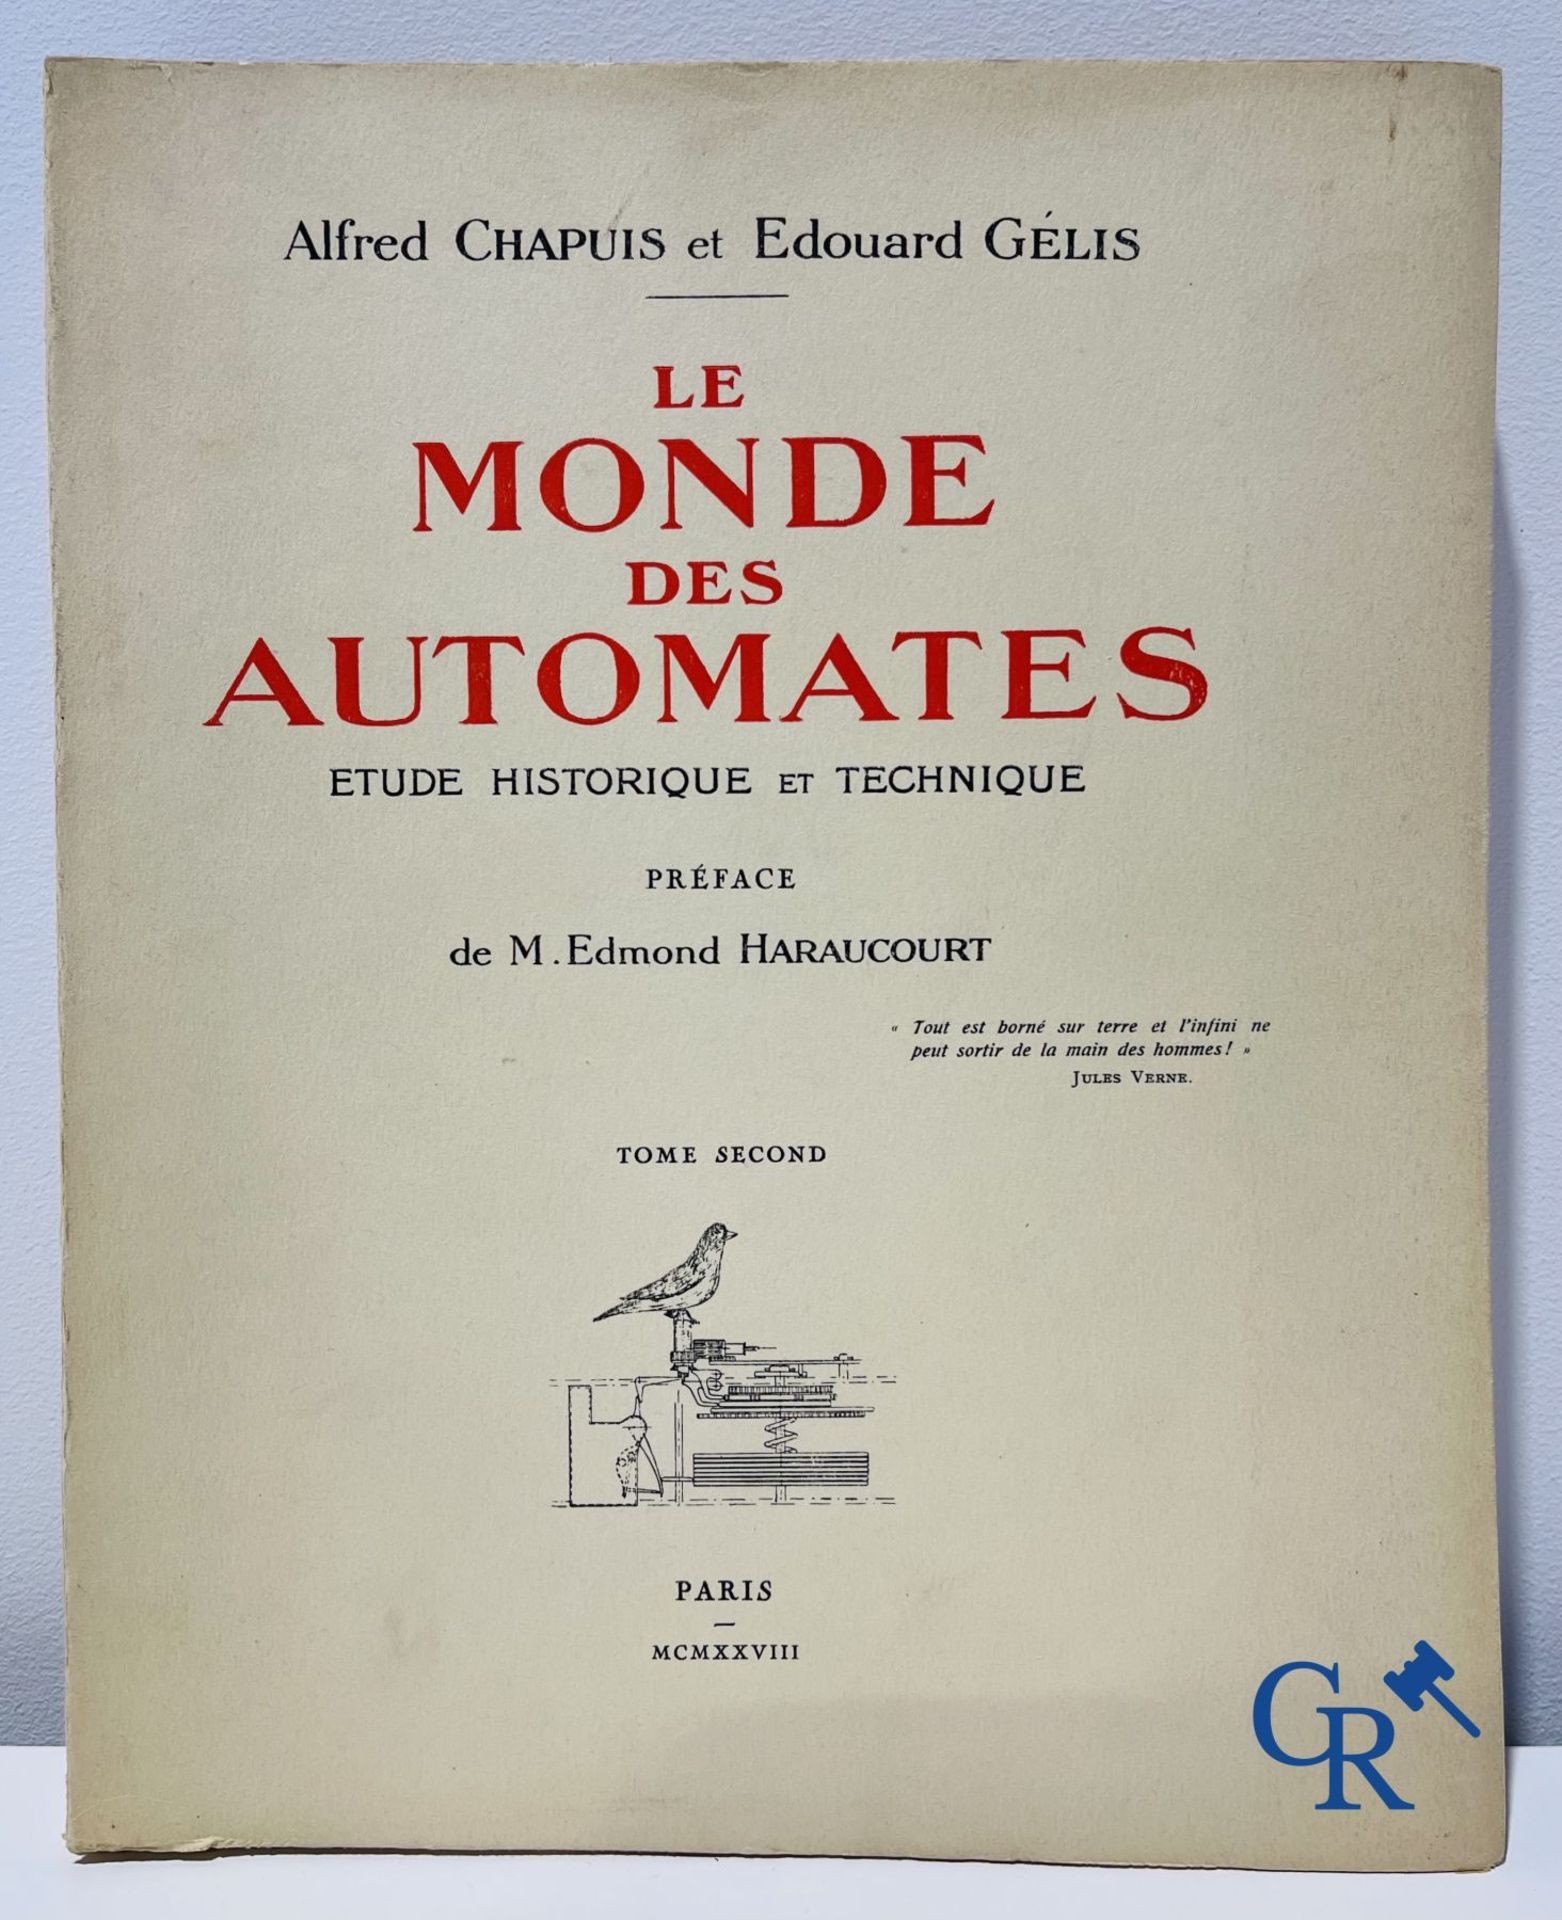 Automates. Rare edition of "Le monde des automates." Alfred Chapuis et Edouard Gélis. Paris 1928. - Image 3 of 26